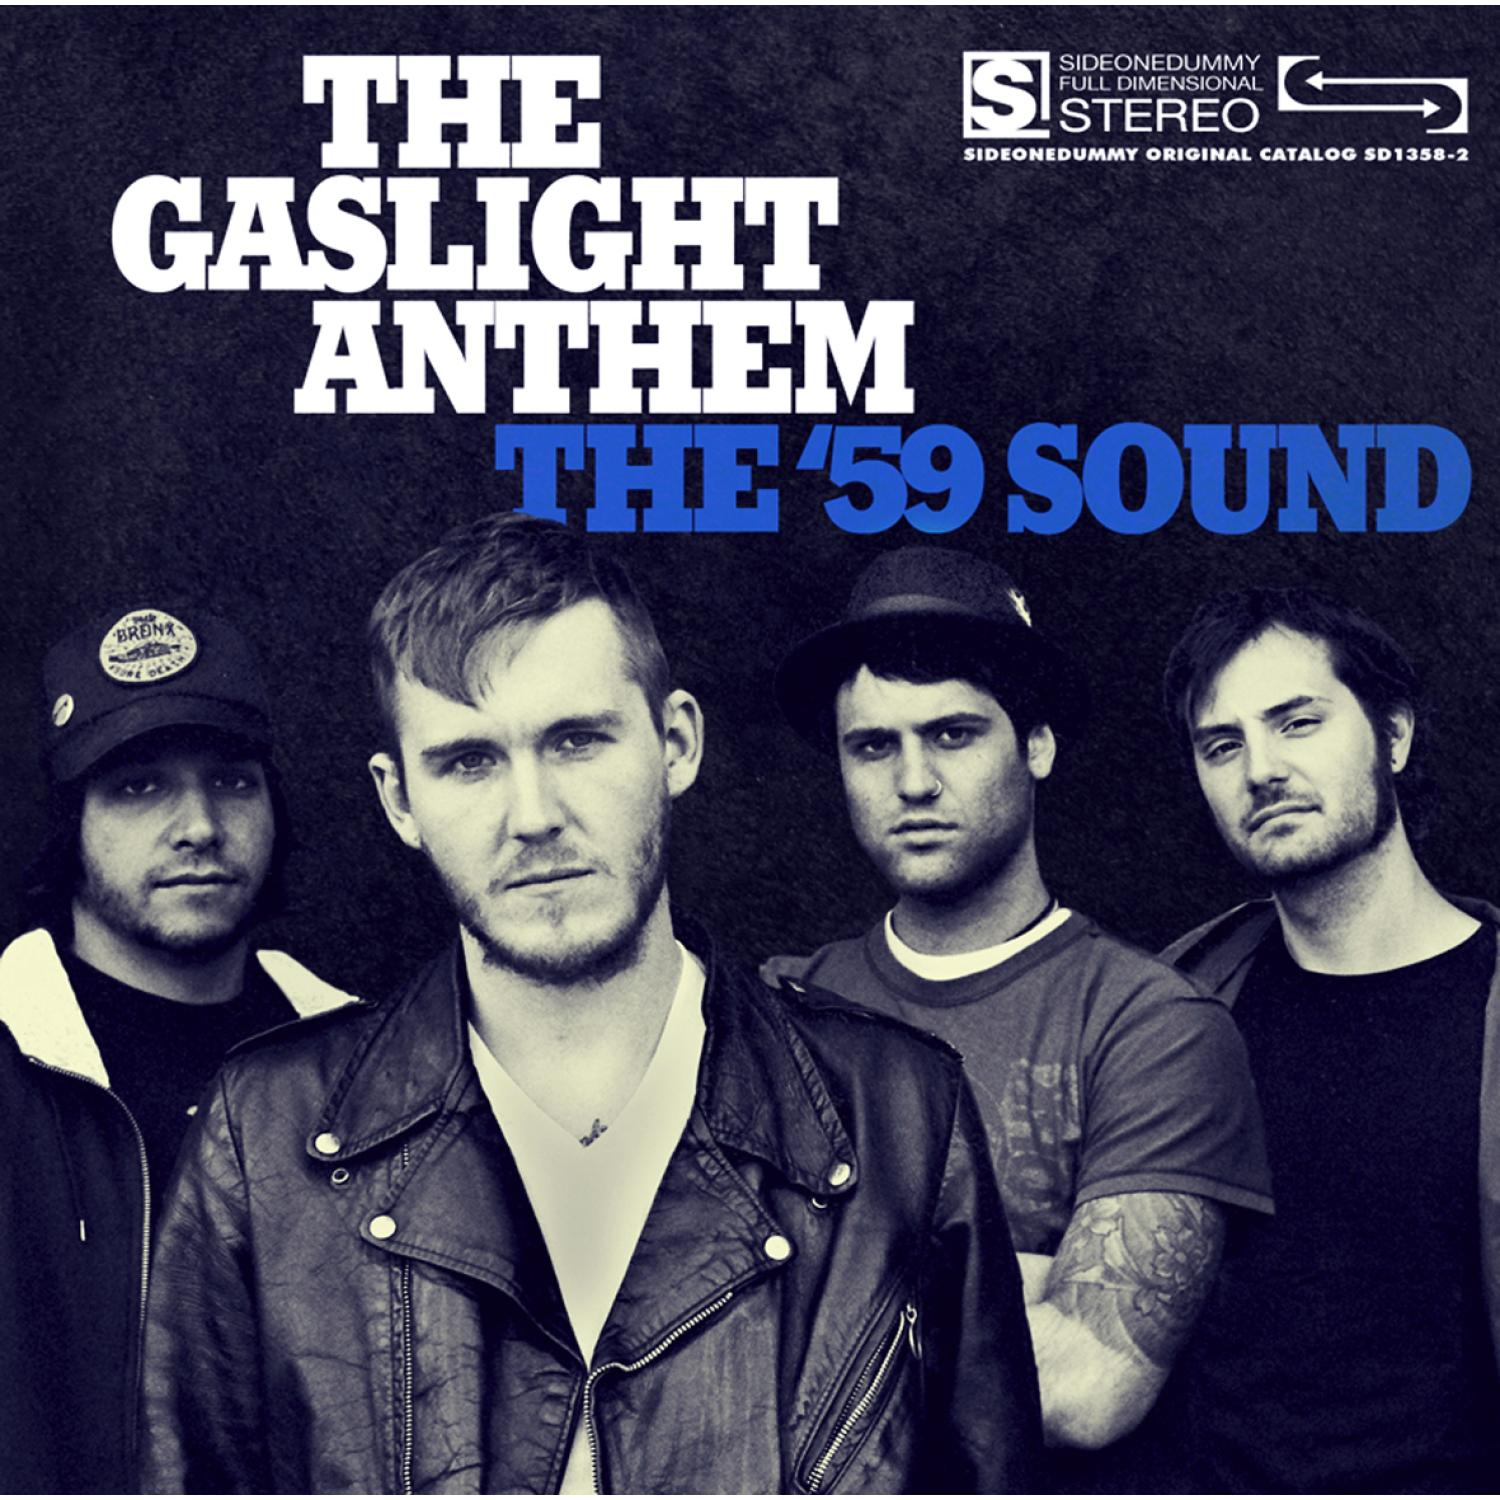 The - Anthem Sound Gaslight The - (CD) \'59